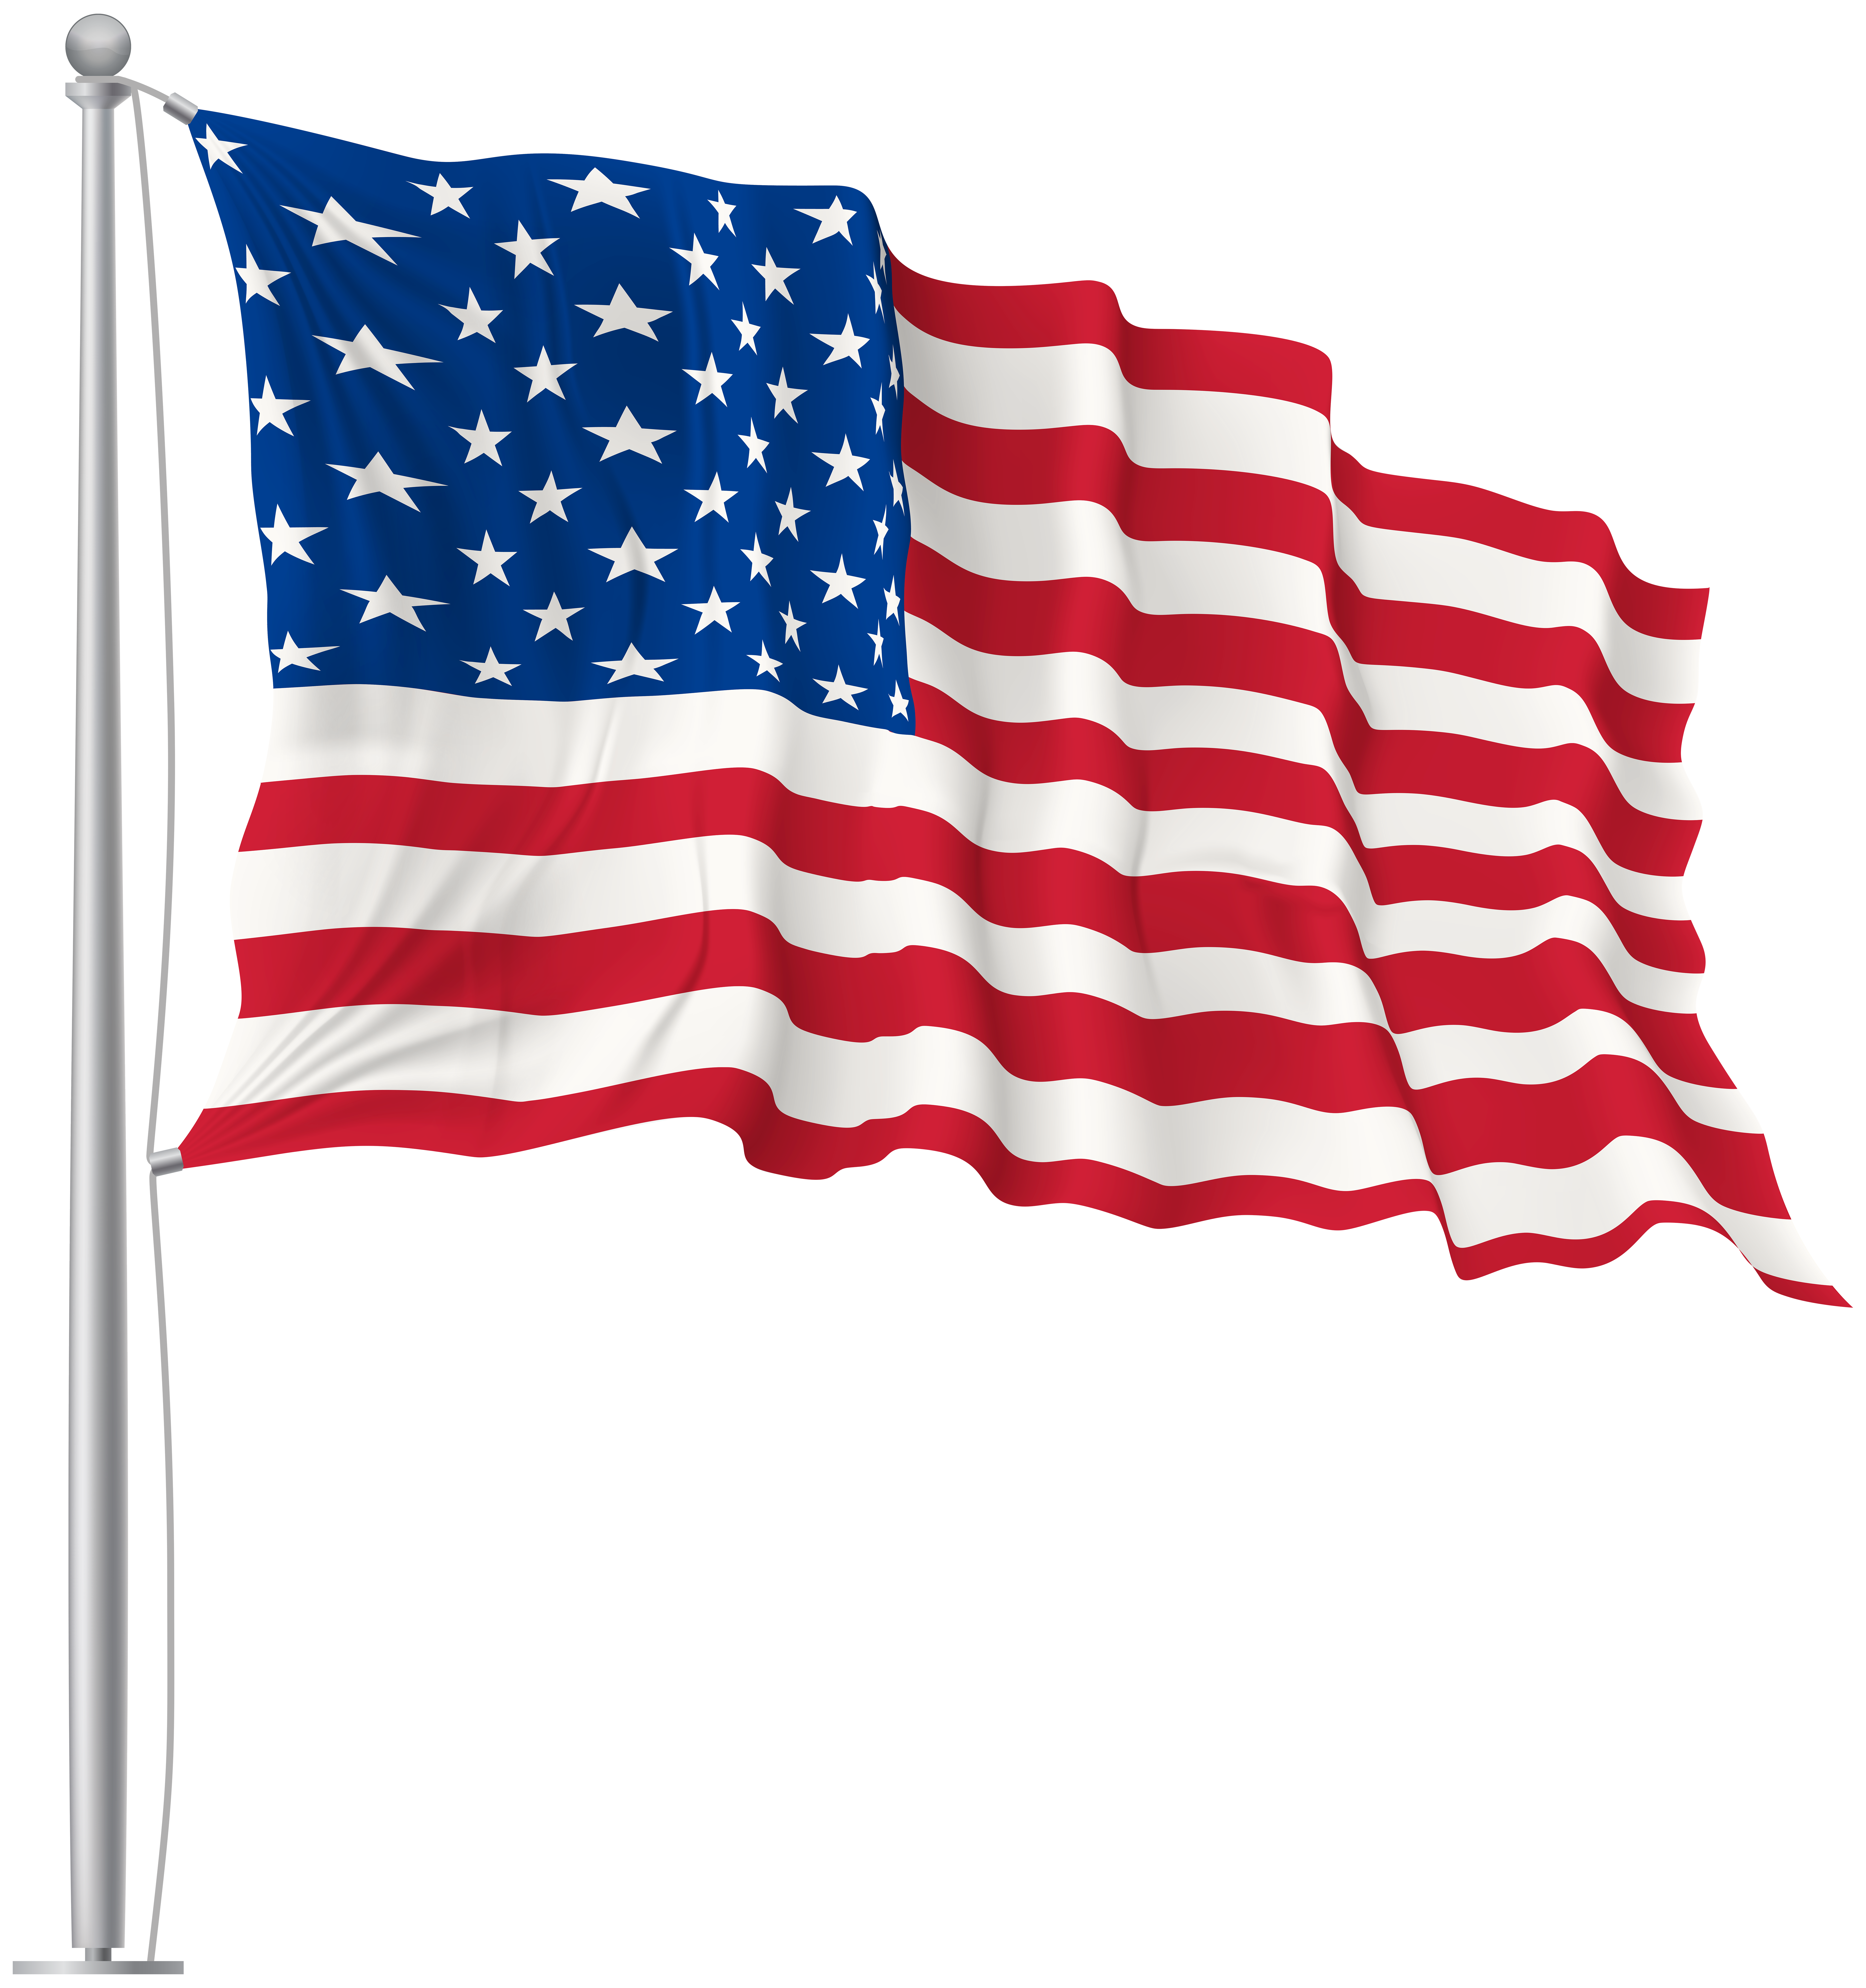 USA Waving Flag PNG Image.